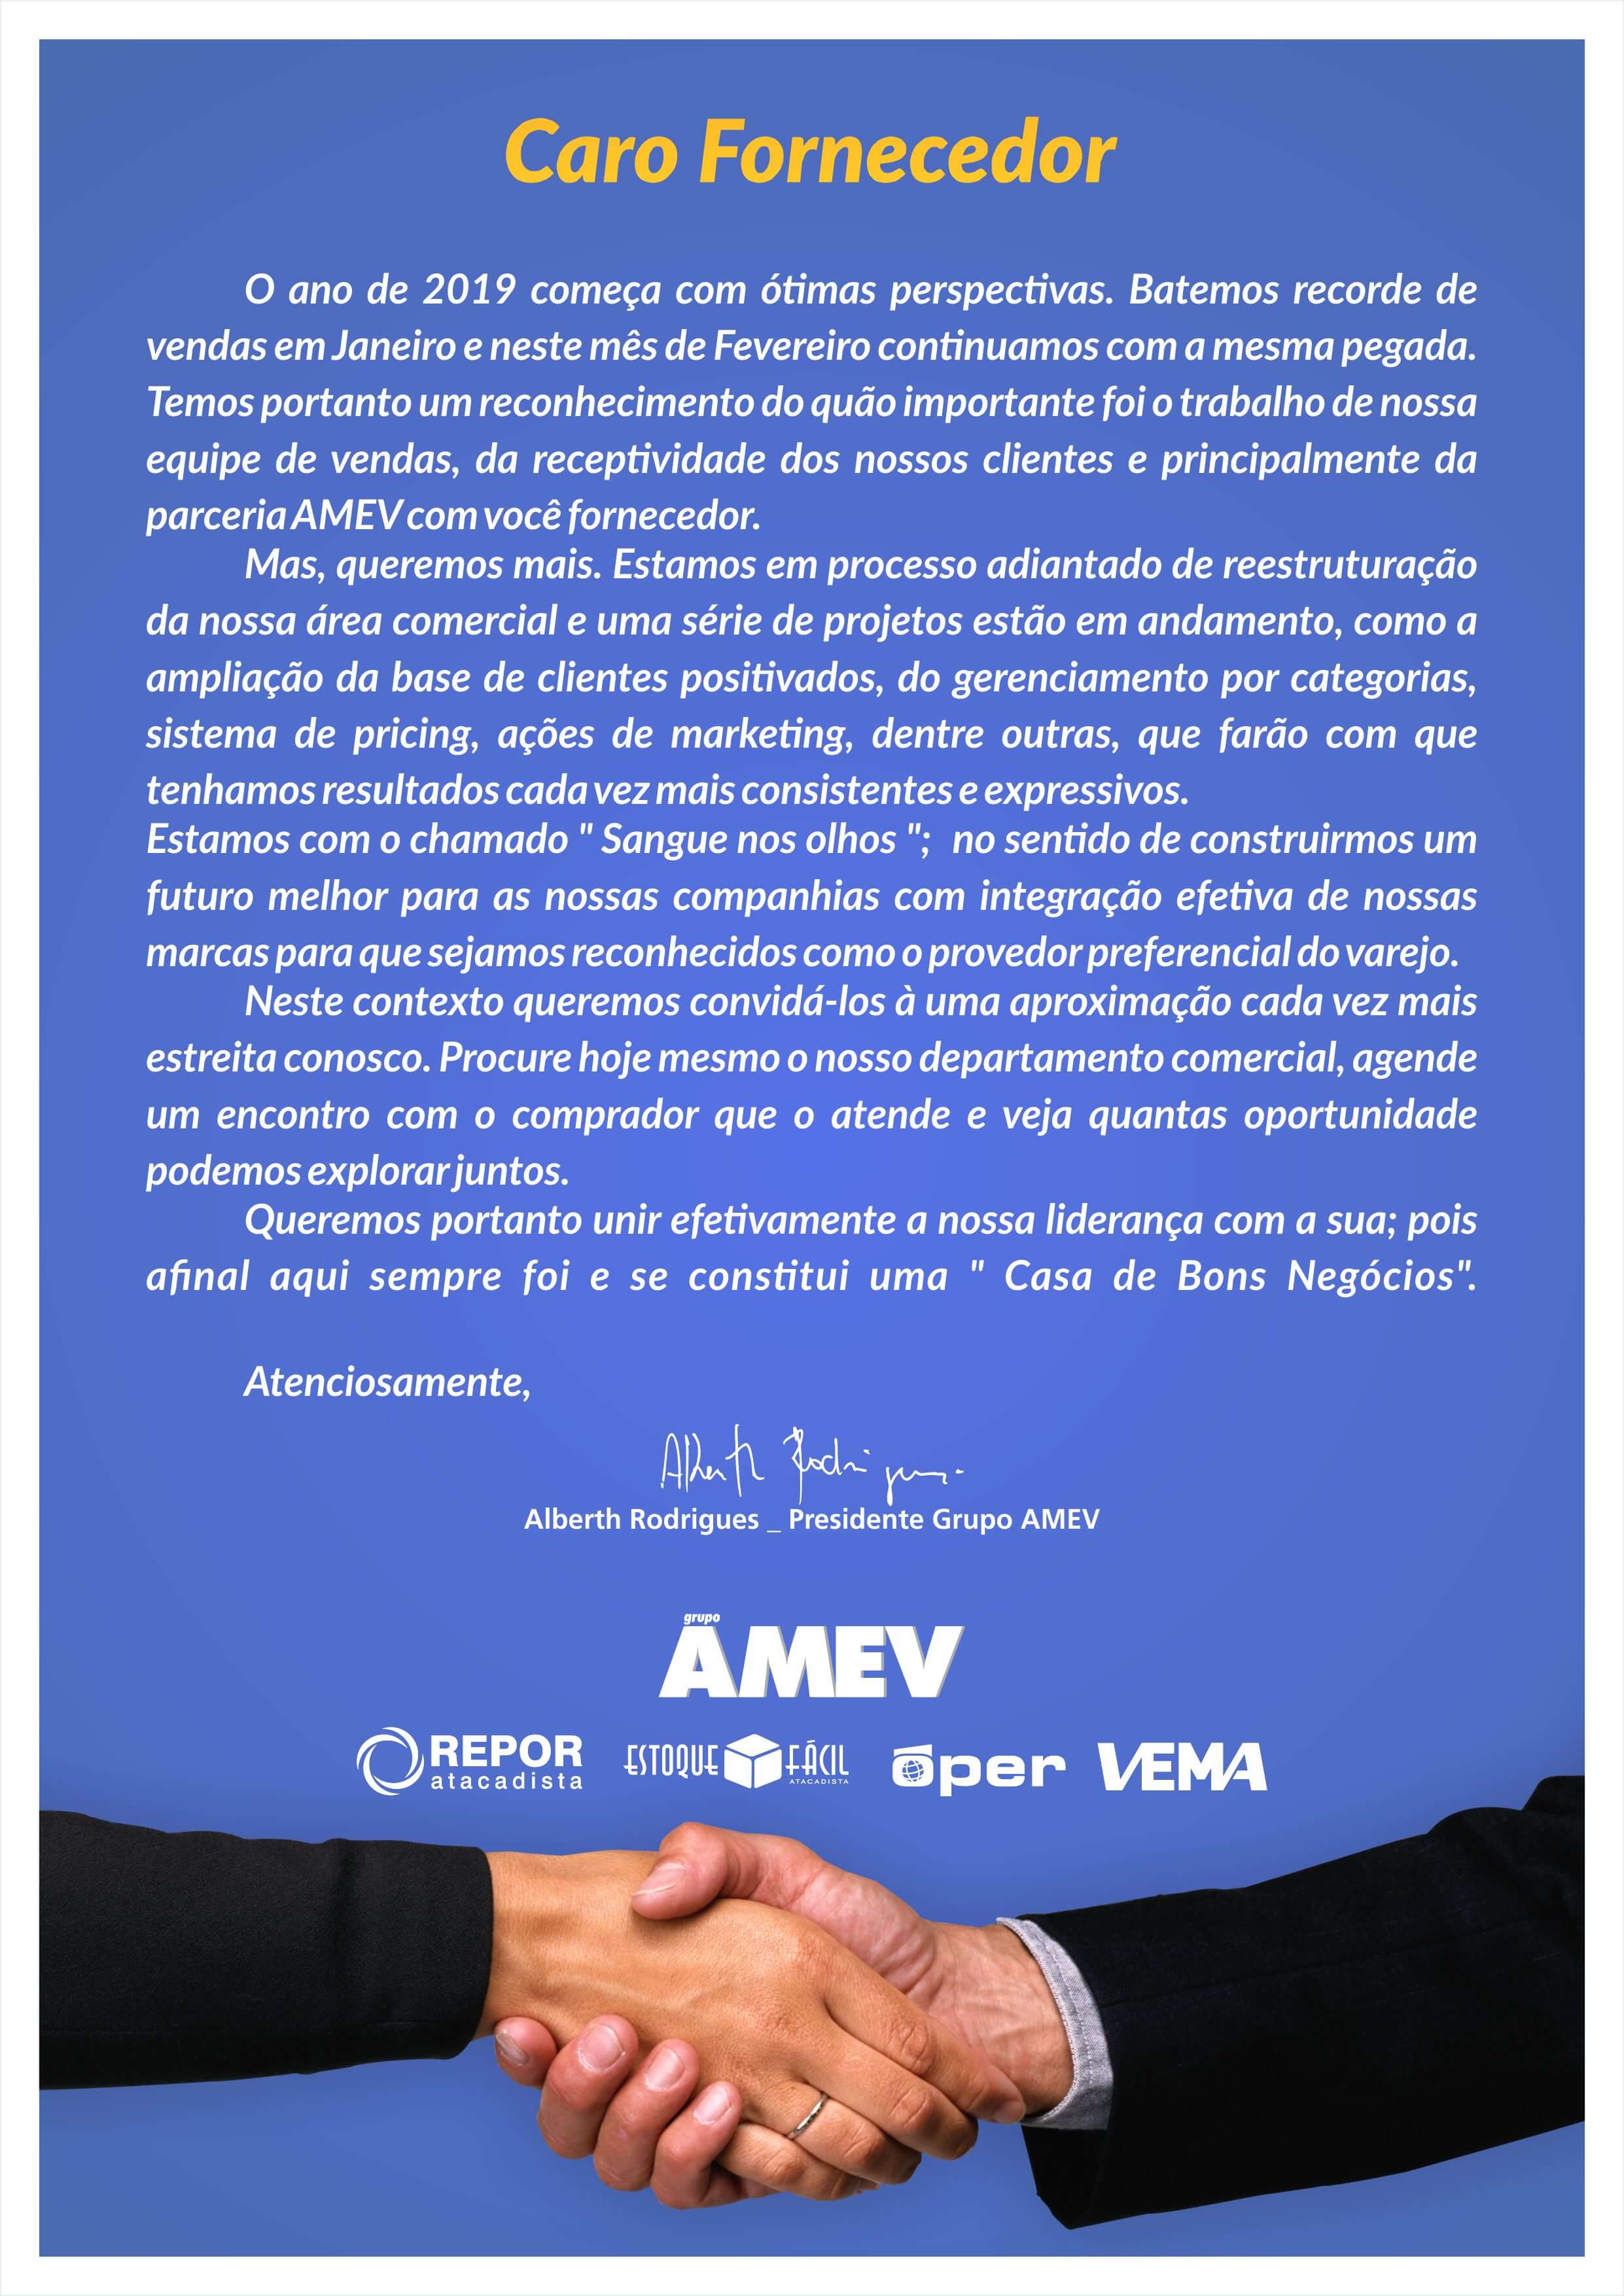 Grupo AMEV, a casa de bons negócios